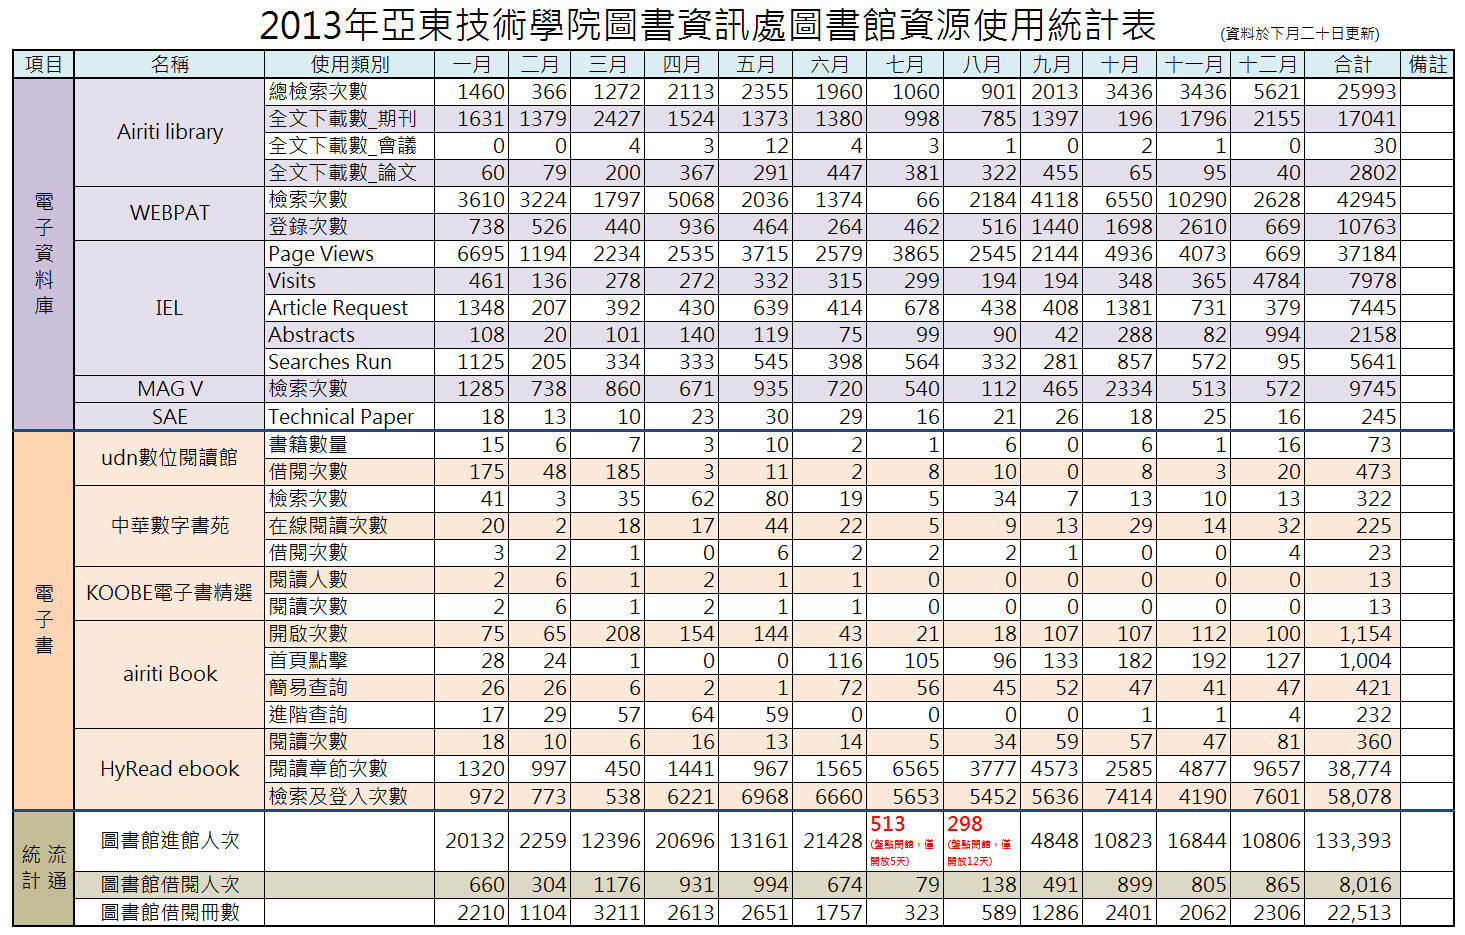 2013圖書館資源使用統計表